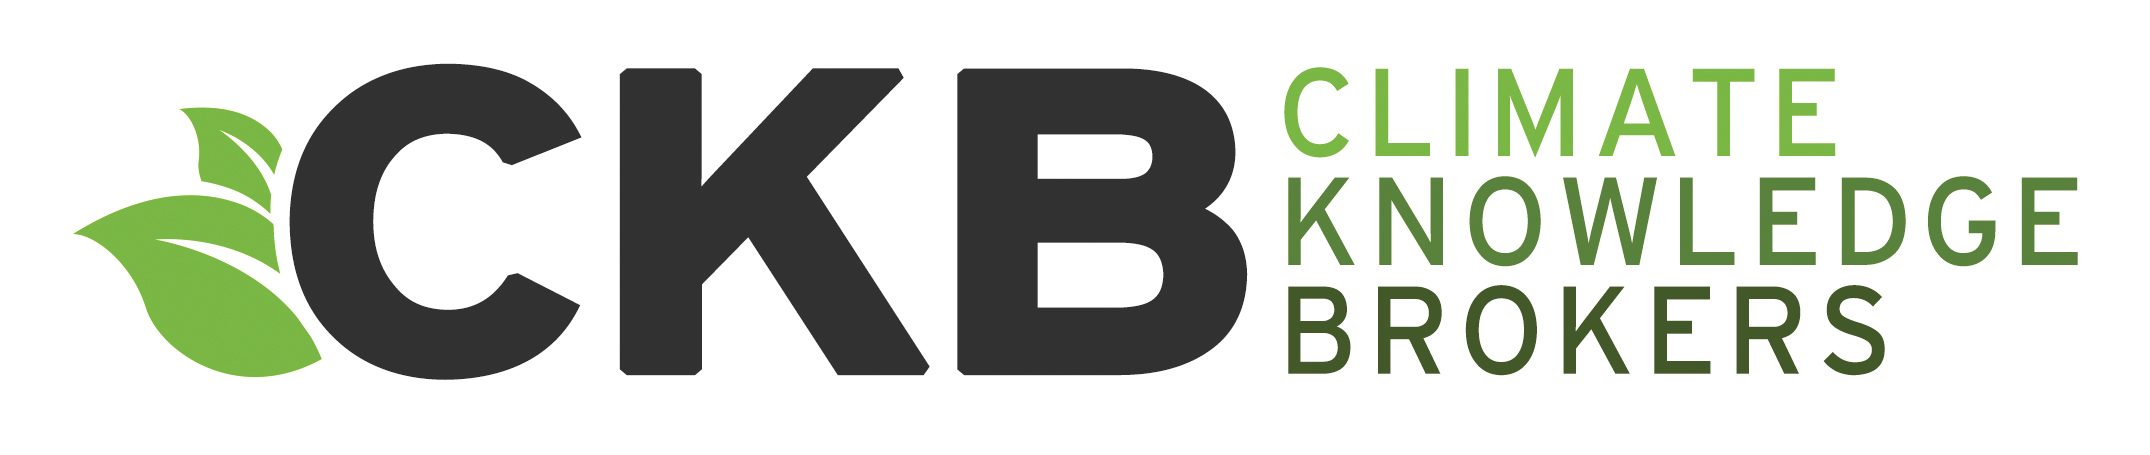 CKB_logo_full_300dpi_cmyk